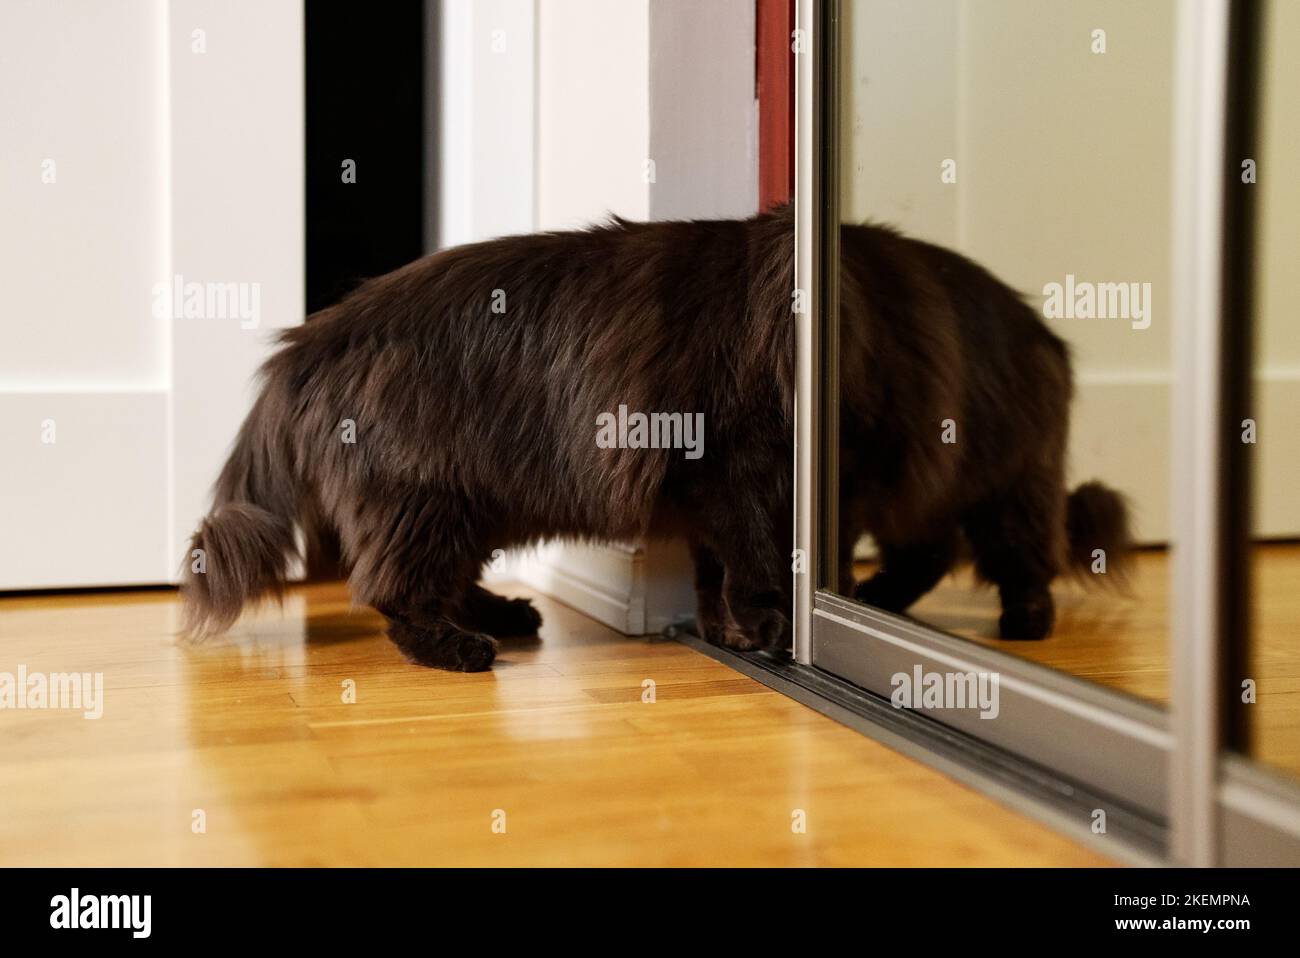 Curious cat climbs into the closet. Stock Photo